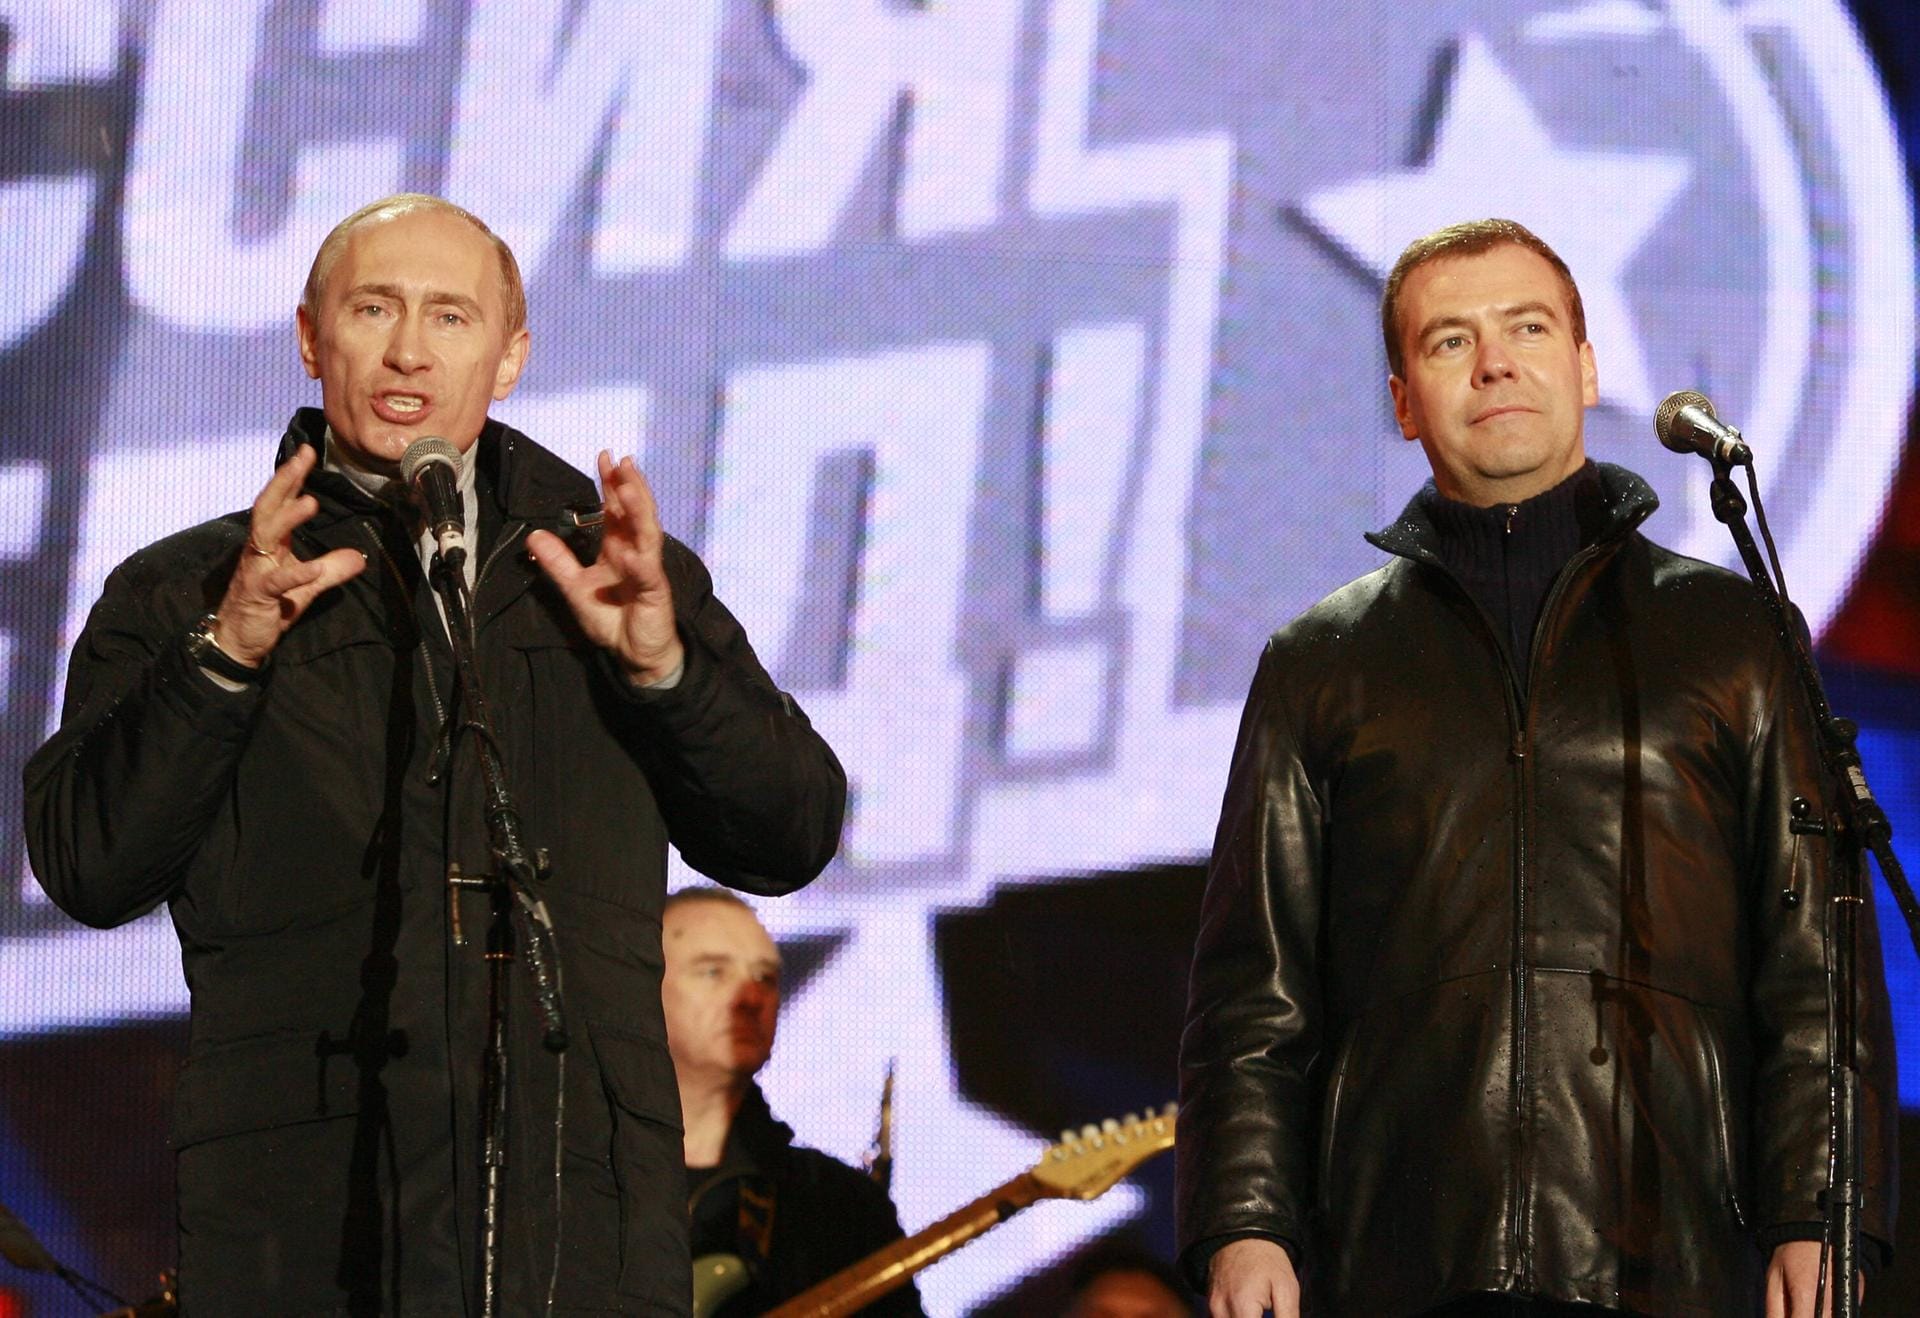 2008 verhindert die Verfassung, dass Putin für eine dritte Amtszeit als Präsident kandidiert: Daraufhin unterstützt er Dmitri Medwedew, der den Posten übernimmt. Putin wird stattdessen vier Jahre Ministerpräsident, ehe er 2012 erneut zum Präsidenten gewählt wird und mit Medwedew die Rollen tauscht.